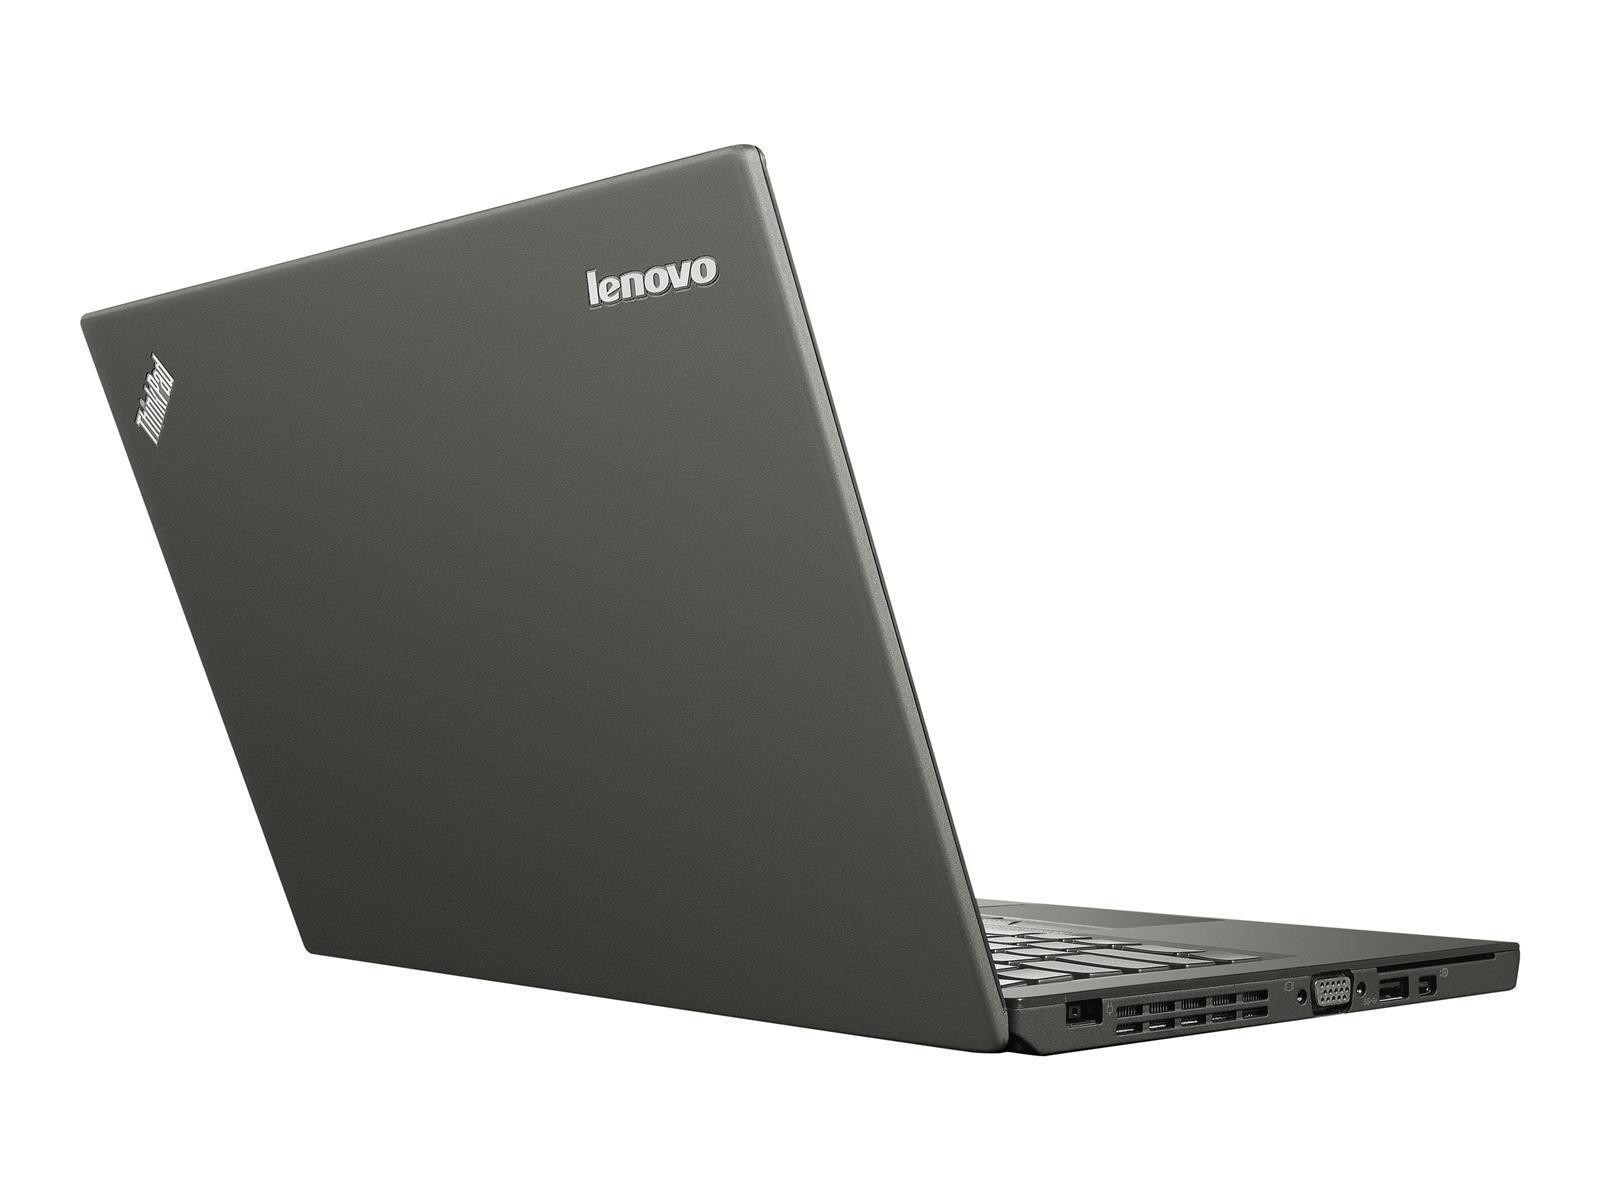 Lenovo ThinkPad X250 12,5" FHD Touch i7-5600U 2,60GHz 8GB RAM 256GB SSD WWAN W10P